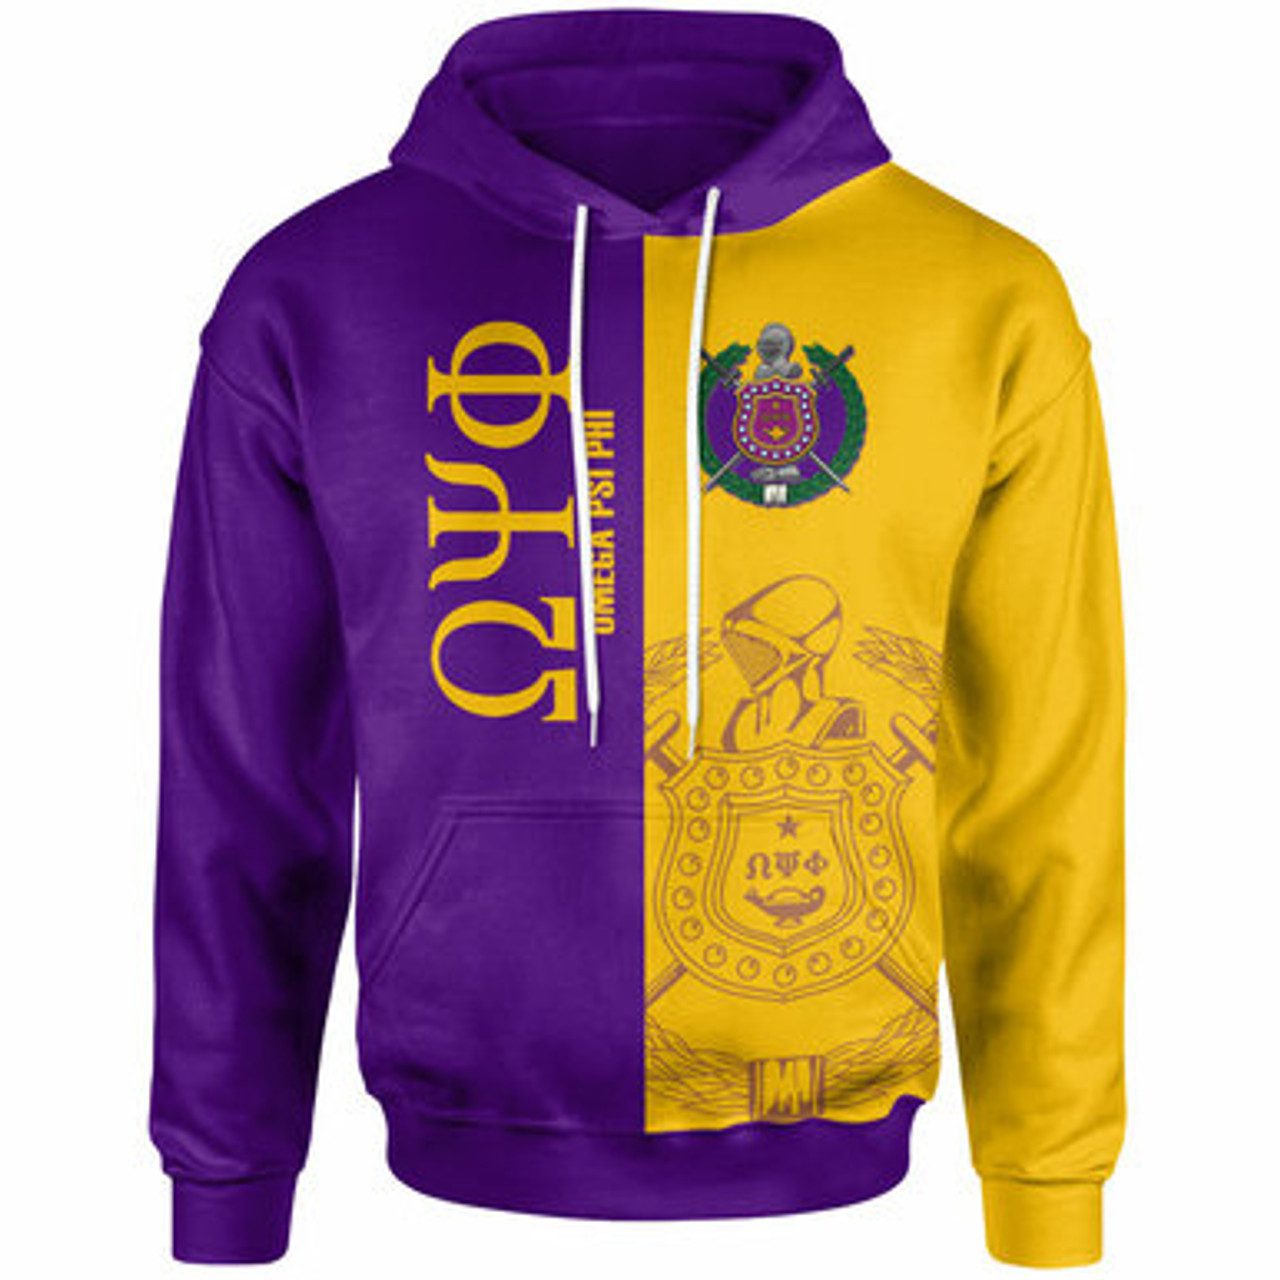 Omega Psi Phi Hoodie – Fraternity Hoodie